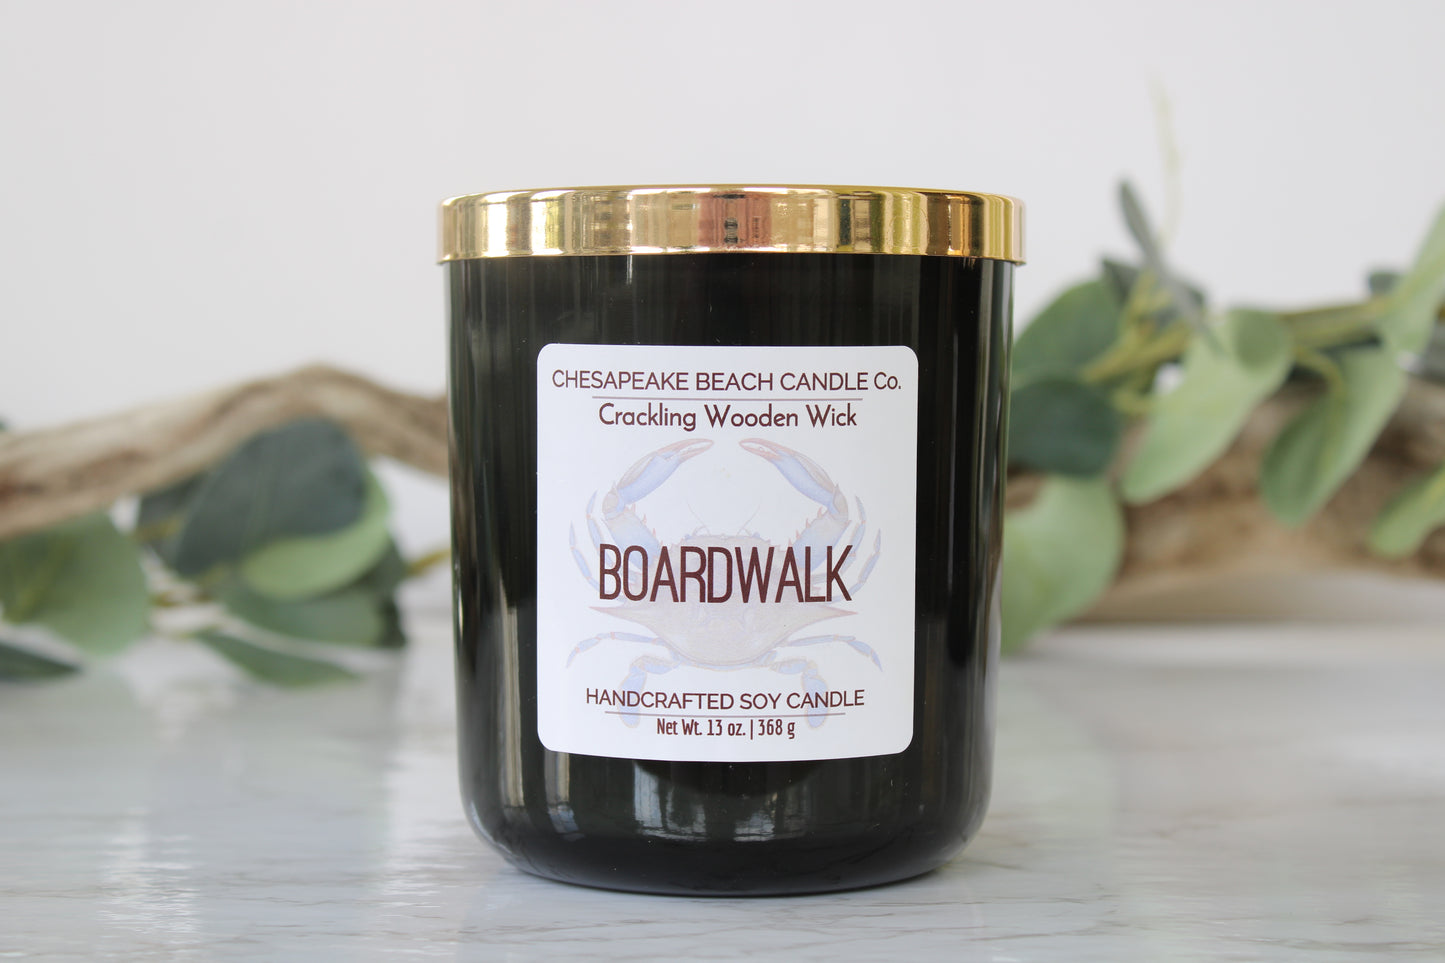 Boardwalk Wooden Wick Candle (13 oz)